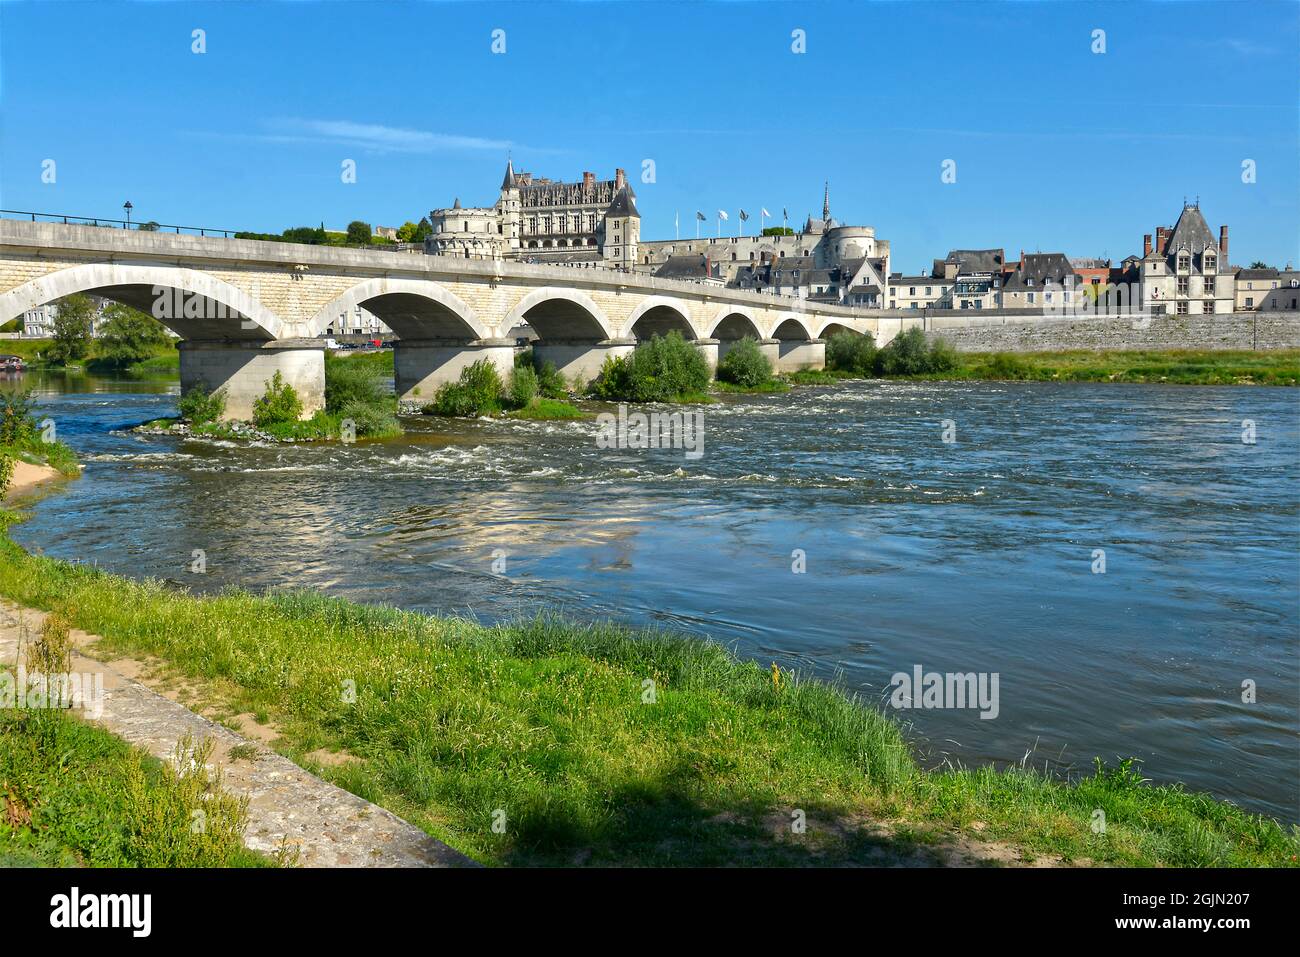 Die Loire und die Brücke von Général Leclerc in Amboise, einer Gemeinde, die für ihr herrliches Schloss bekannt ist, im Département Indre-et-Loire in Frankreich Stockfoto